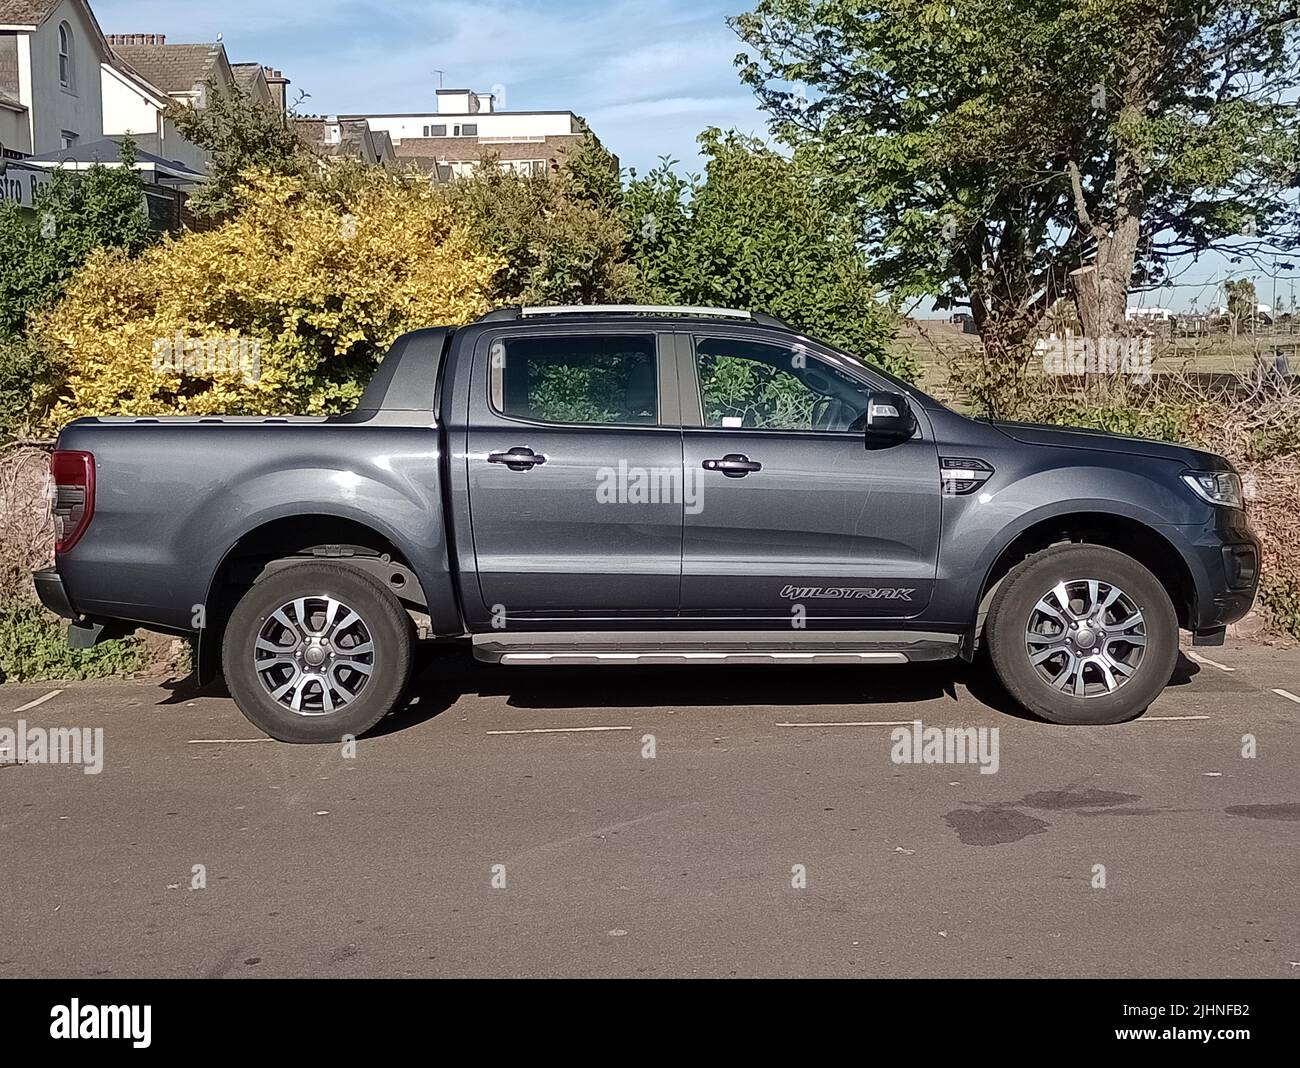 A 2019 Ford Ranger Wildtrak pickup truck parked in Devon, England